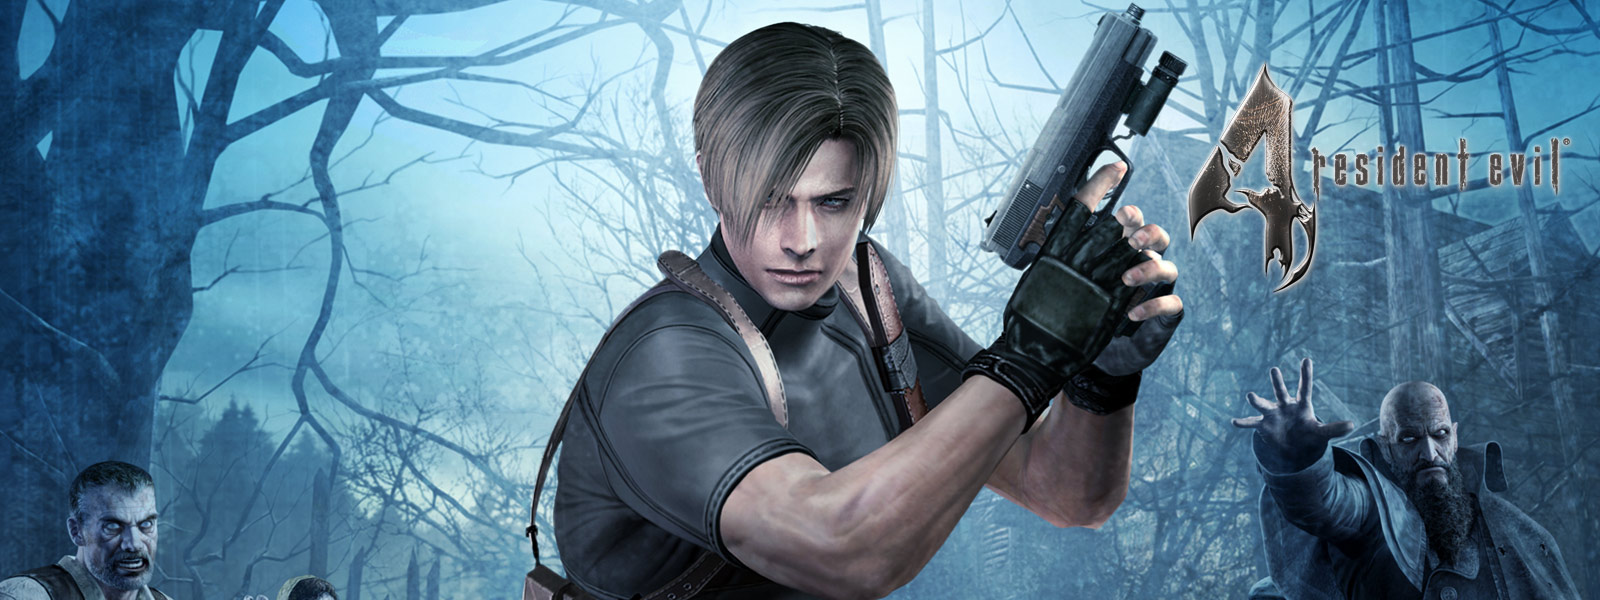 Resident Evil 4, personnage tenant un pistolet dans une forêt sombre et entouré de zombies